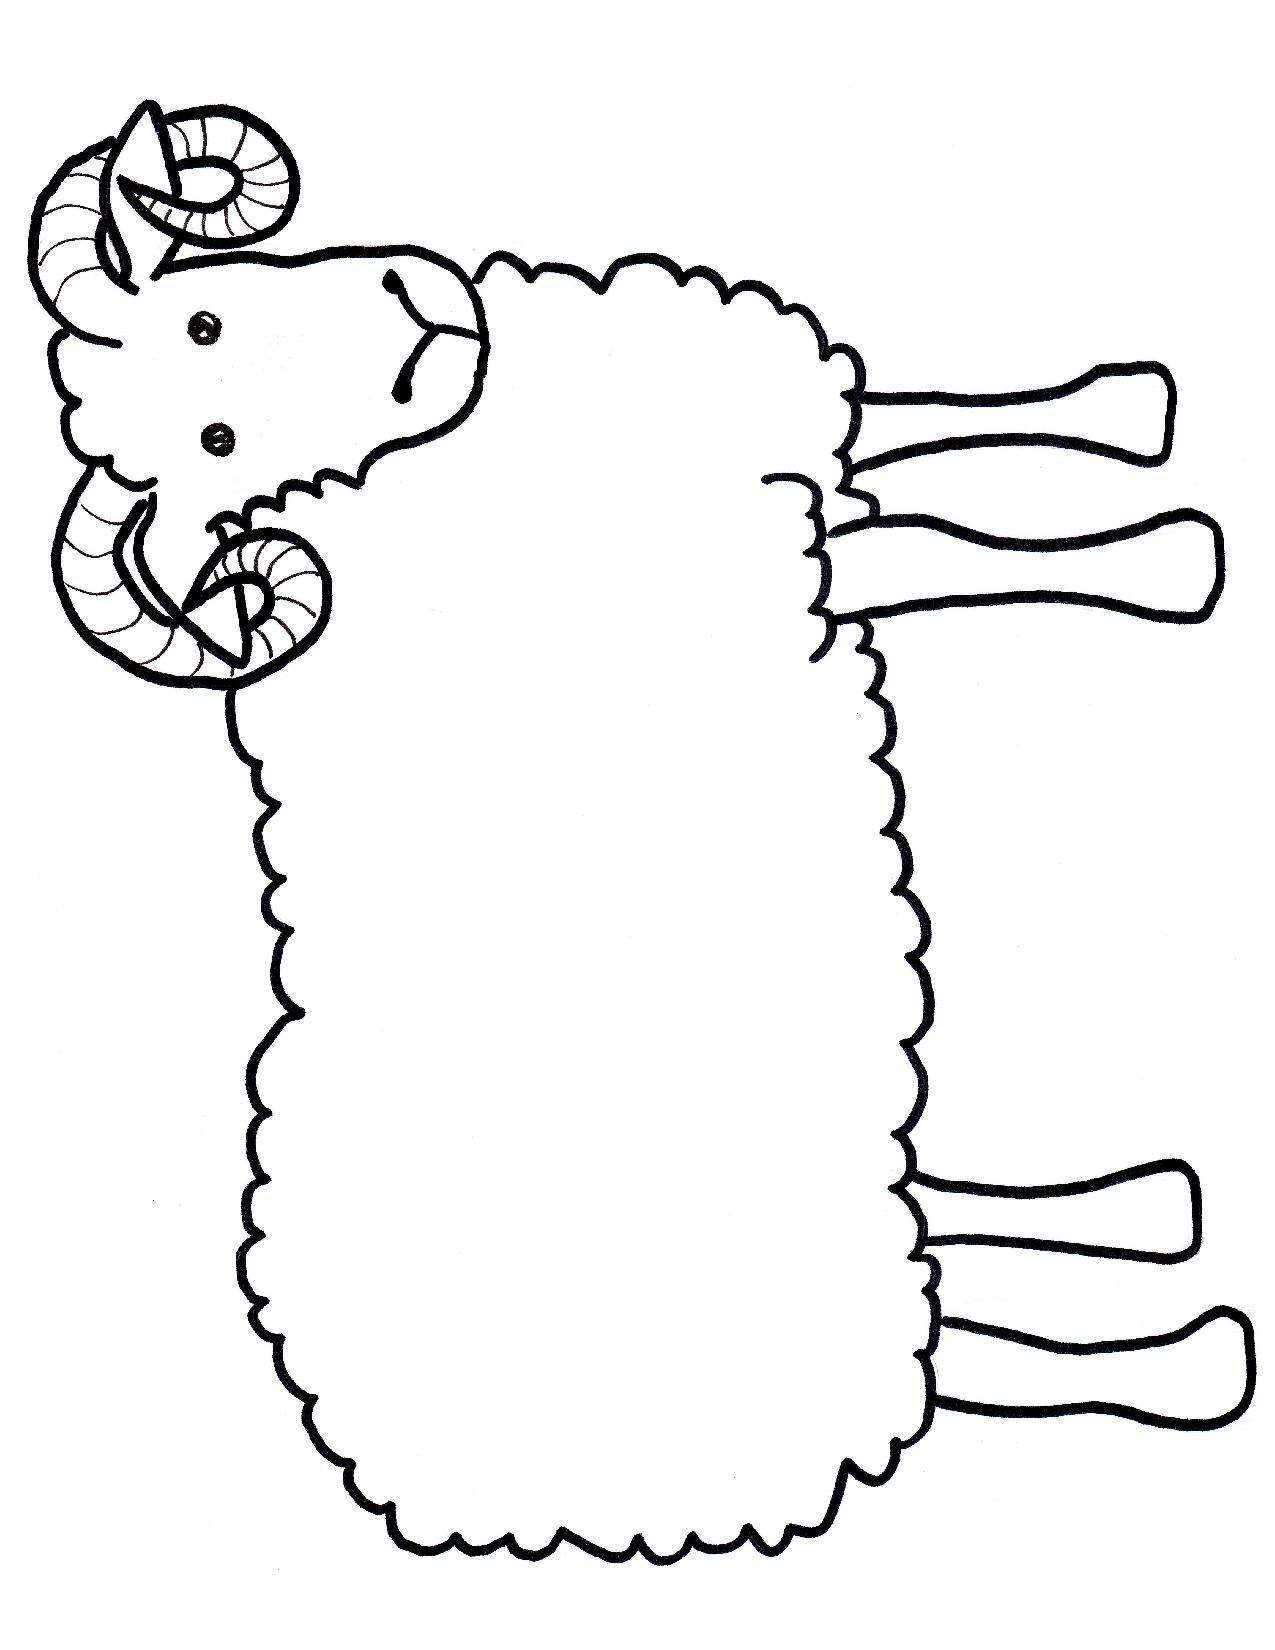 sheep-template-clipart-best